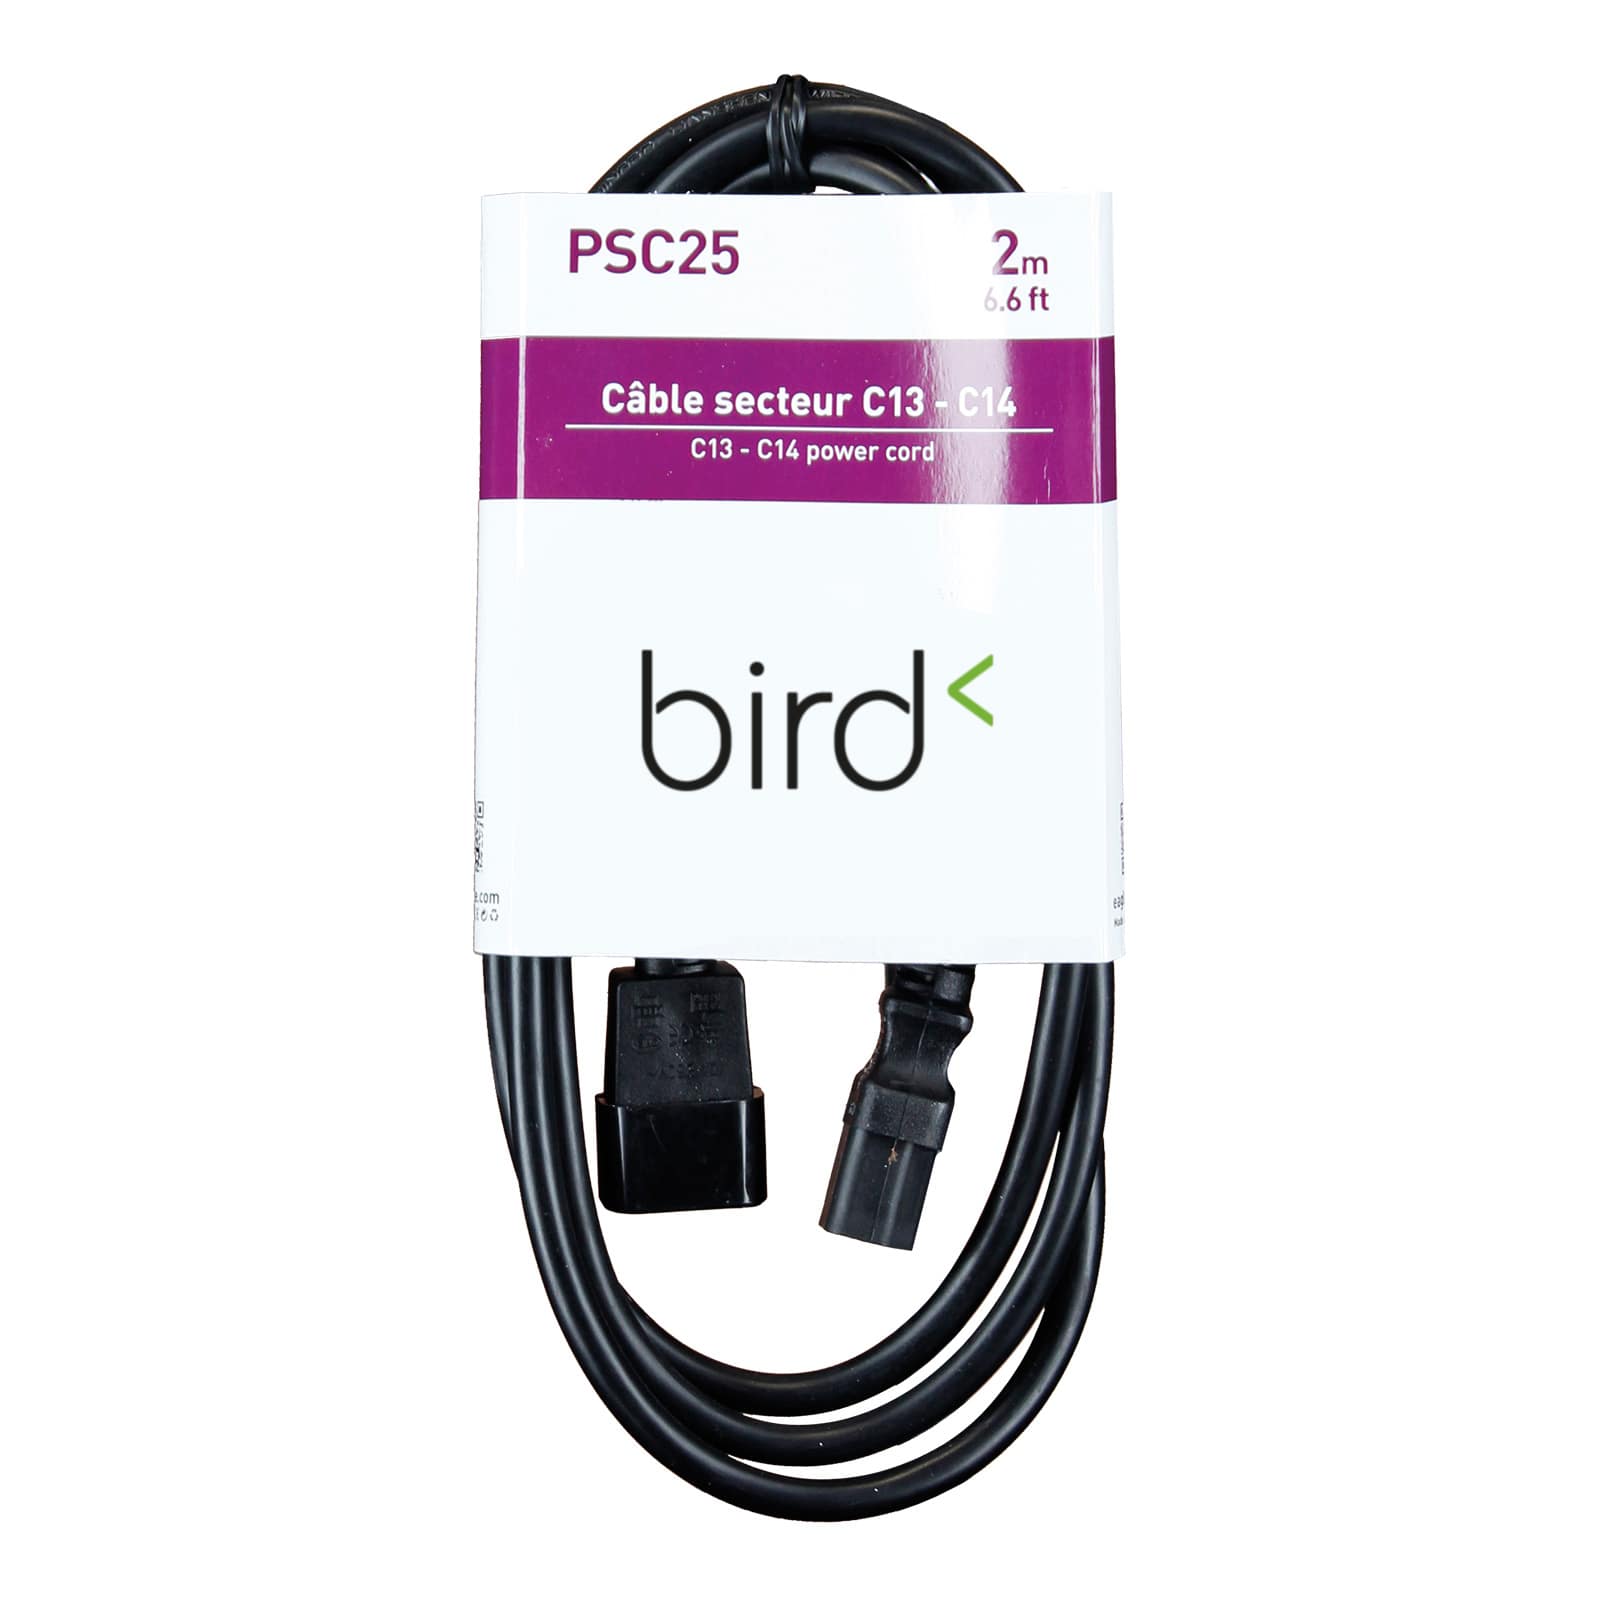 BIRD PSC25 - 6.6 FT